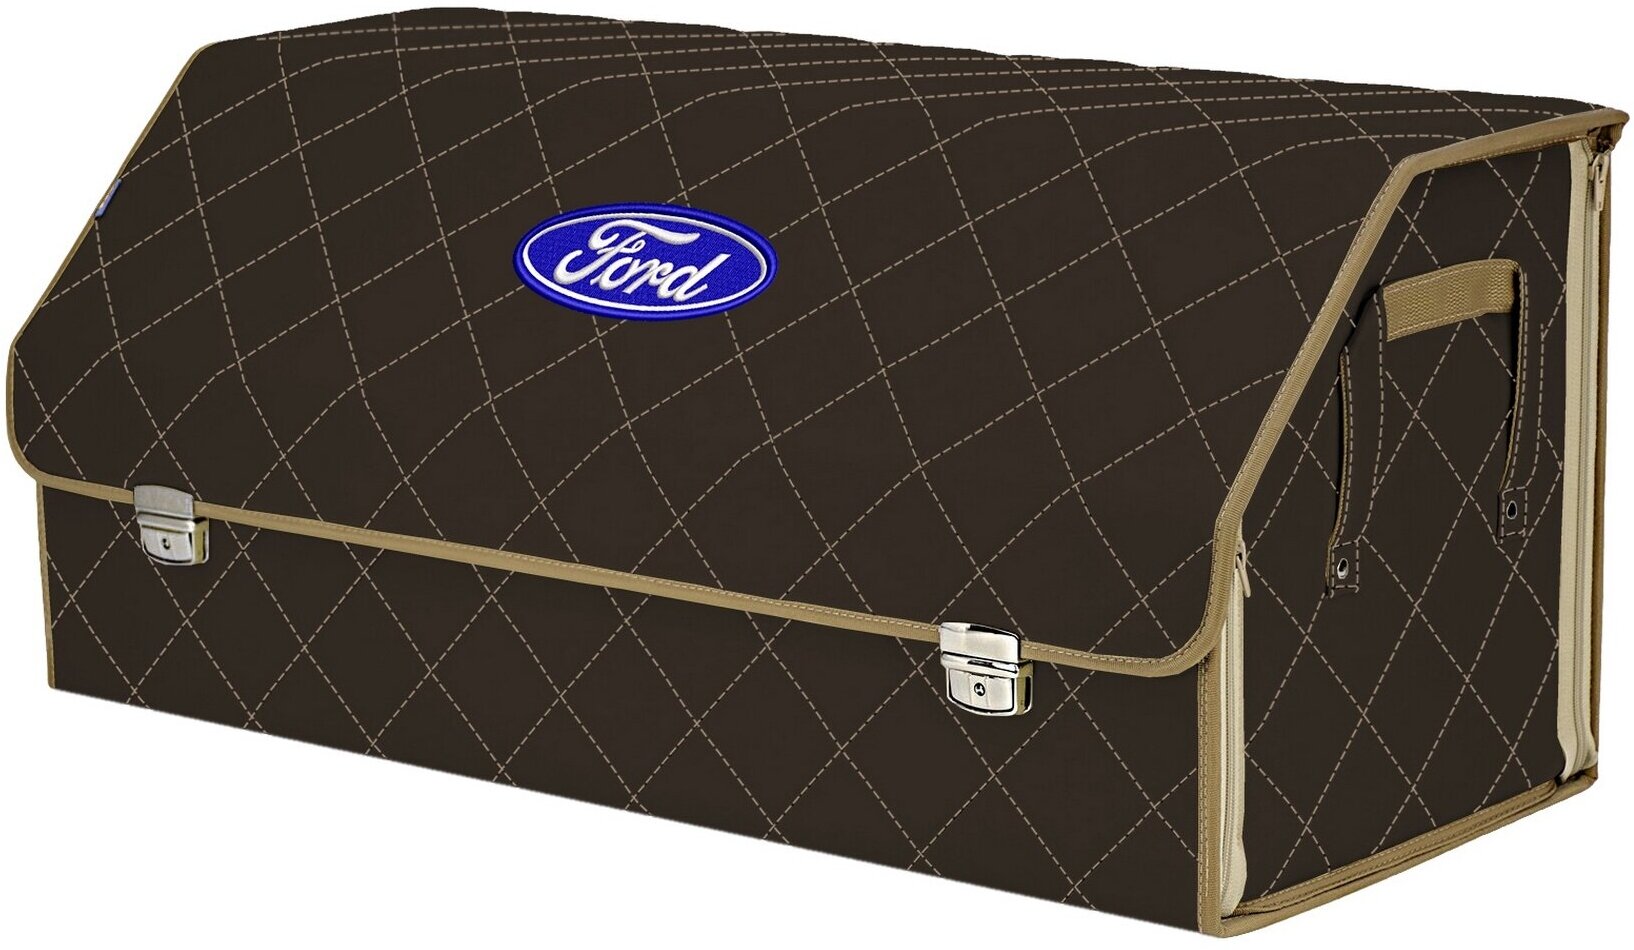 Органайзер-саквояж в багажник "Союз Премиум" (размер XXL). Цвет: коричневый с бежевой прострочкой Ромб и вышивкой Ford (Форд).